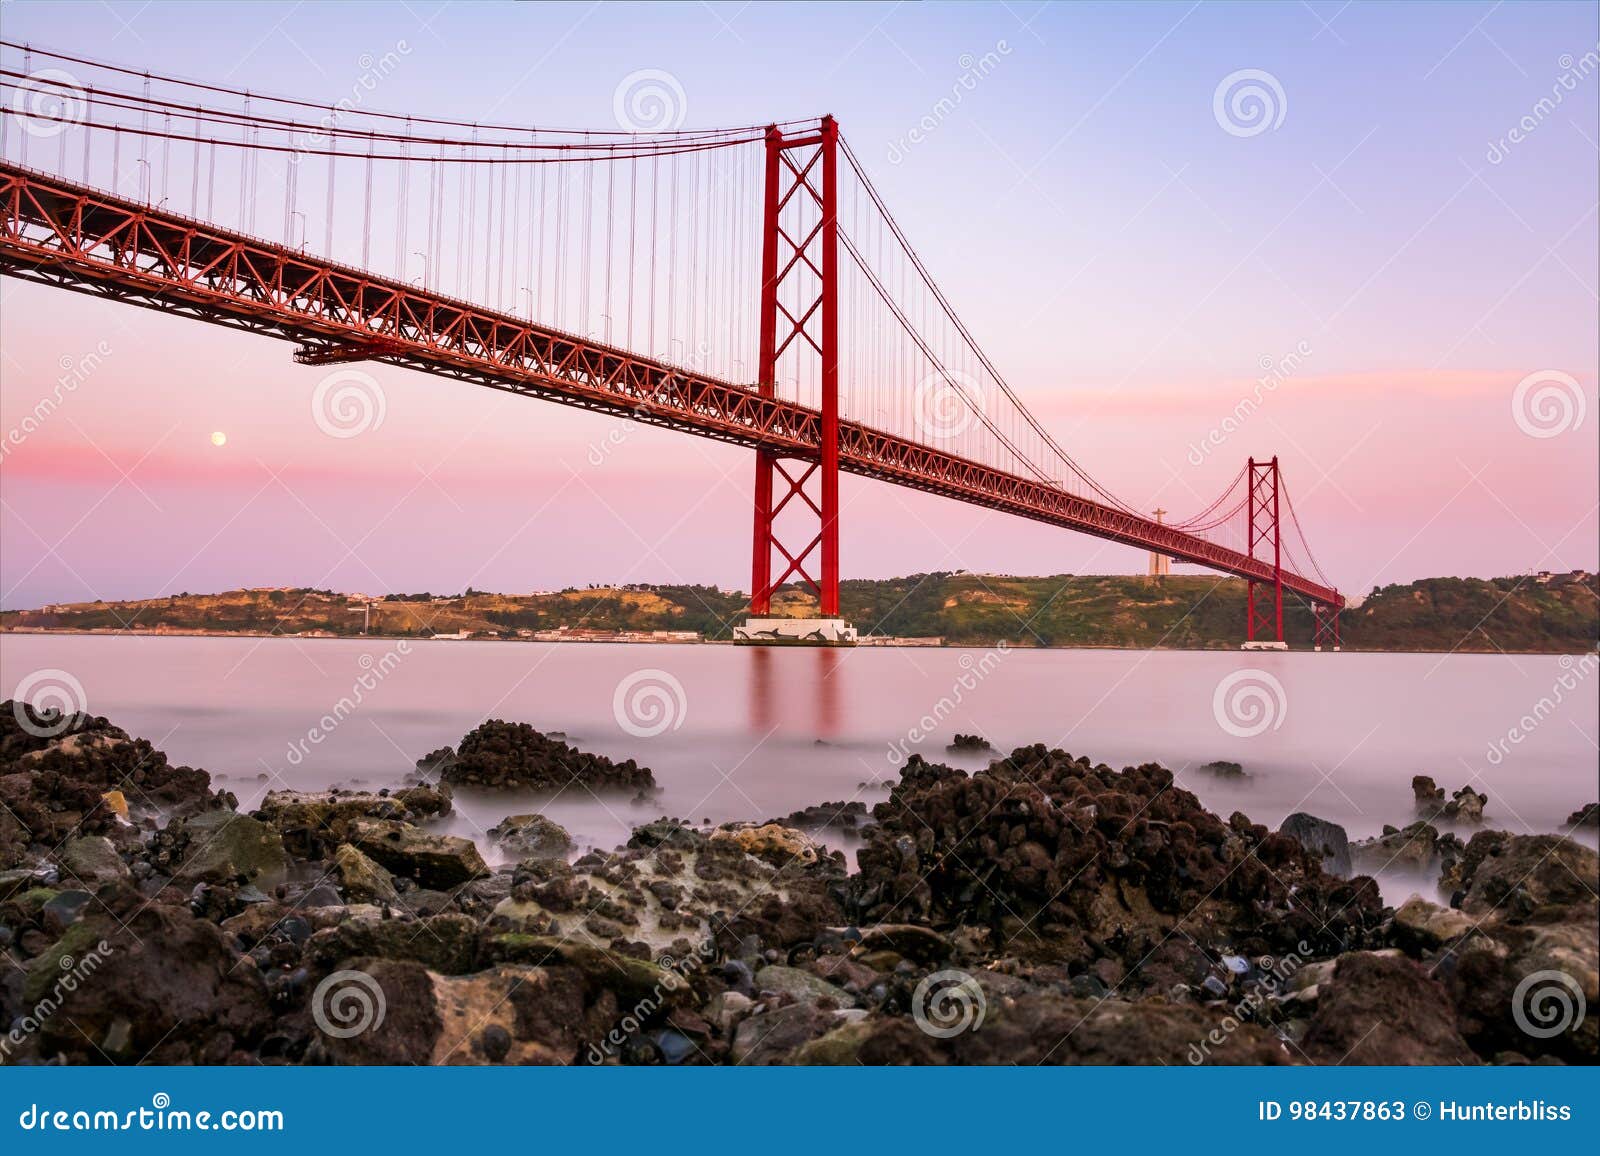 ponte 25 de abril bridge famous architectural sight lisbon portugal landscape